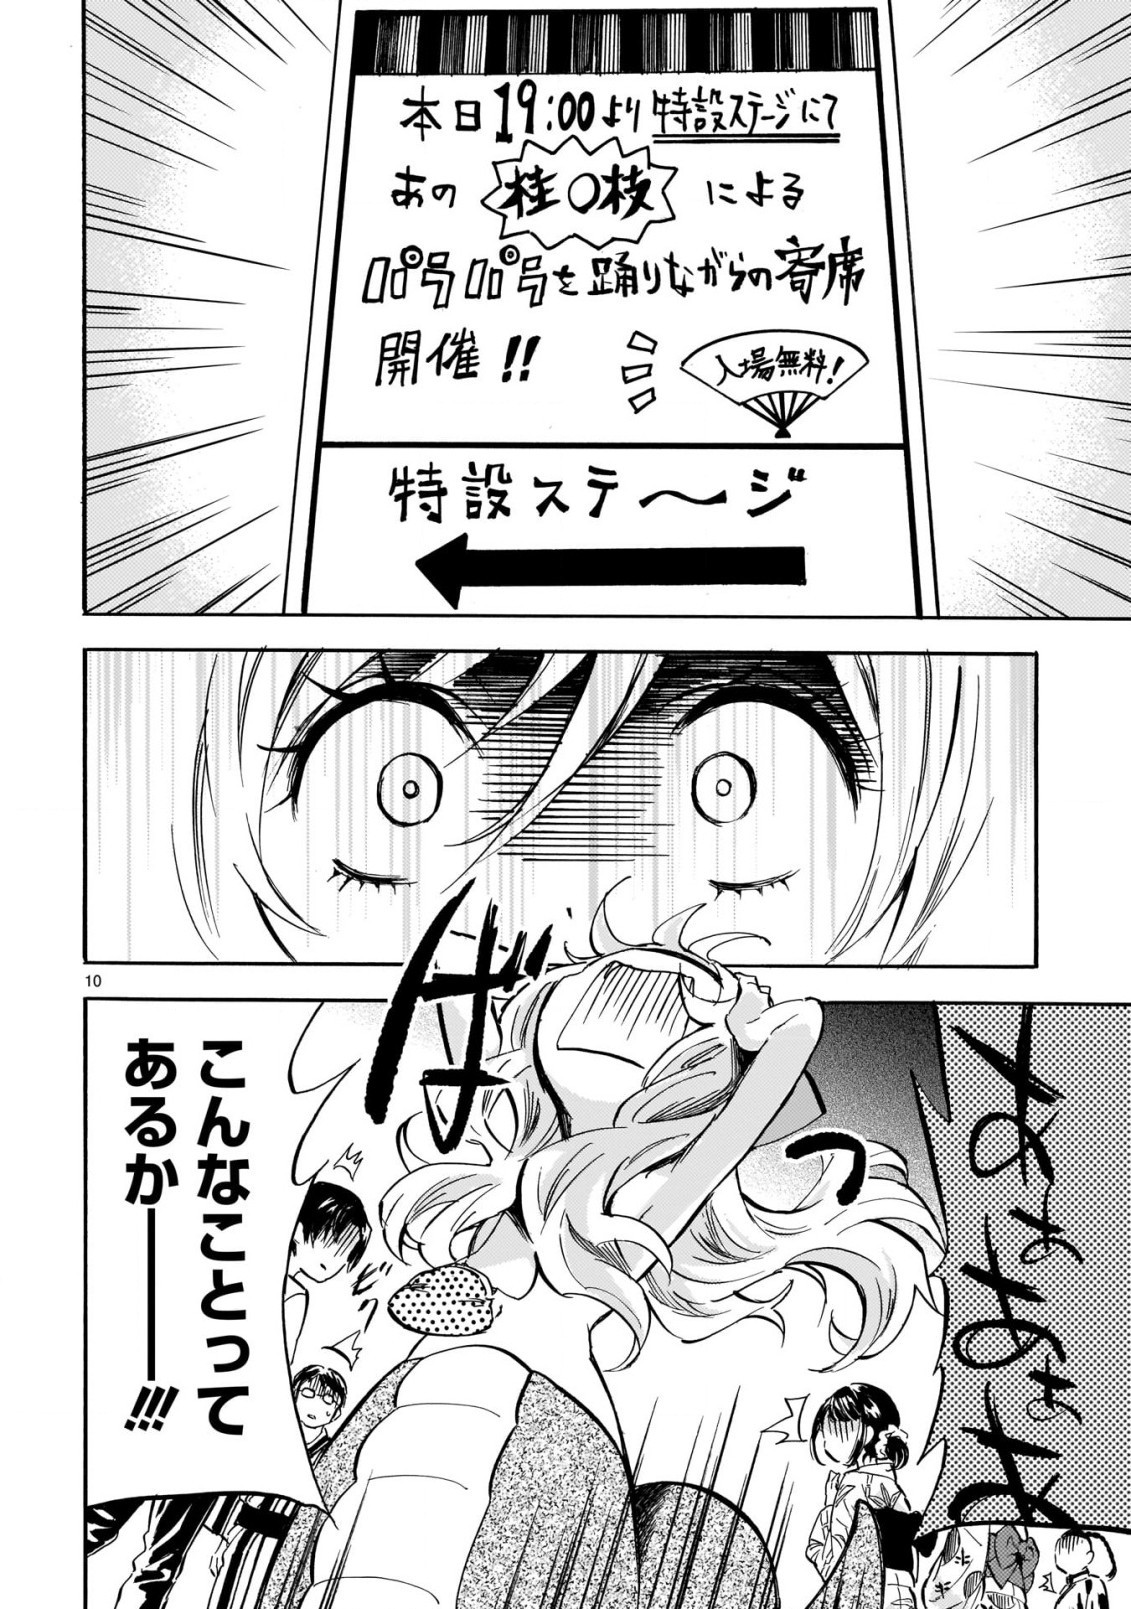 Jashin-chan Dropkick - Chapter 200 - Page 10